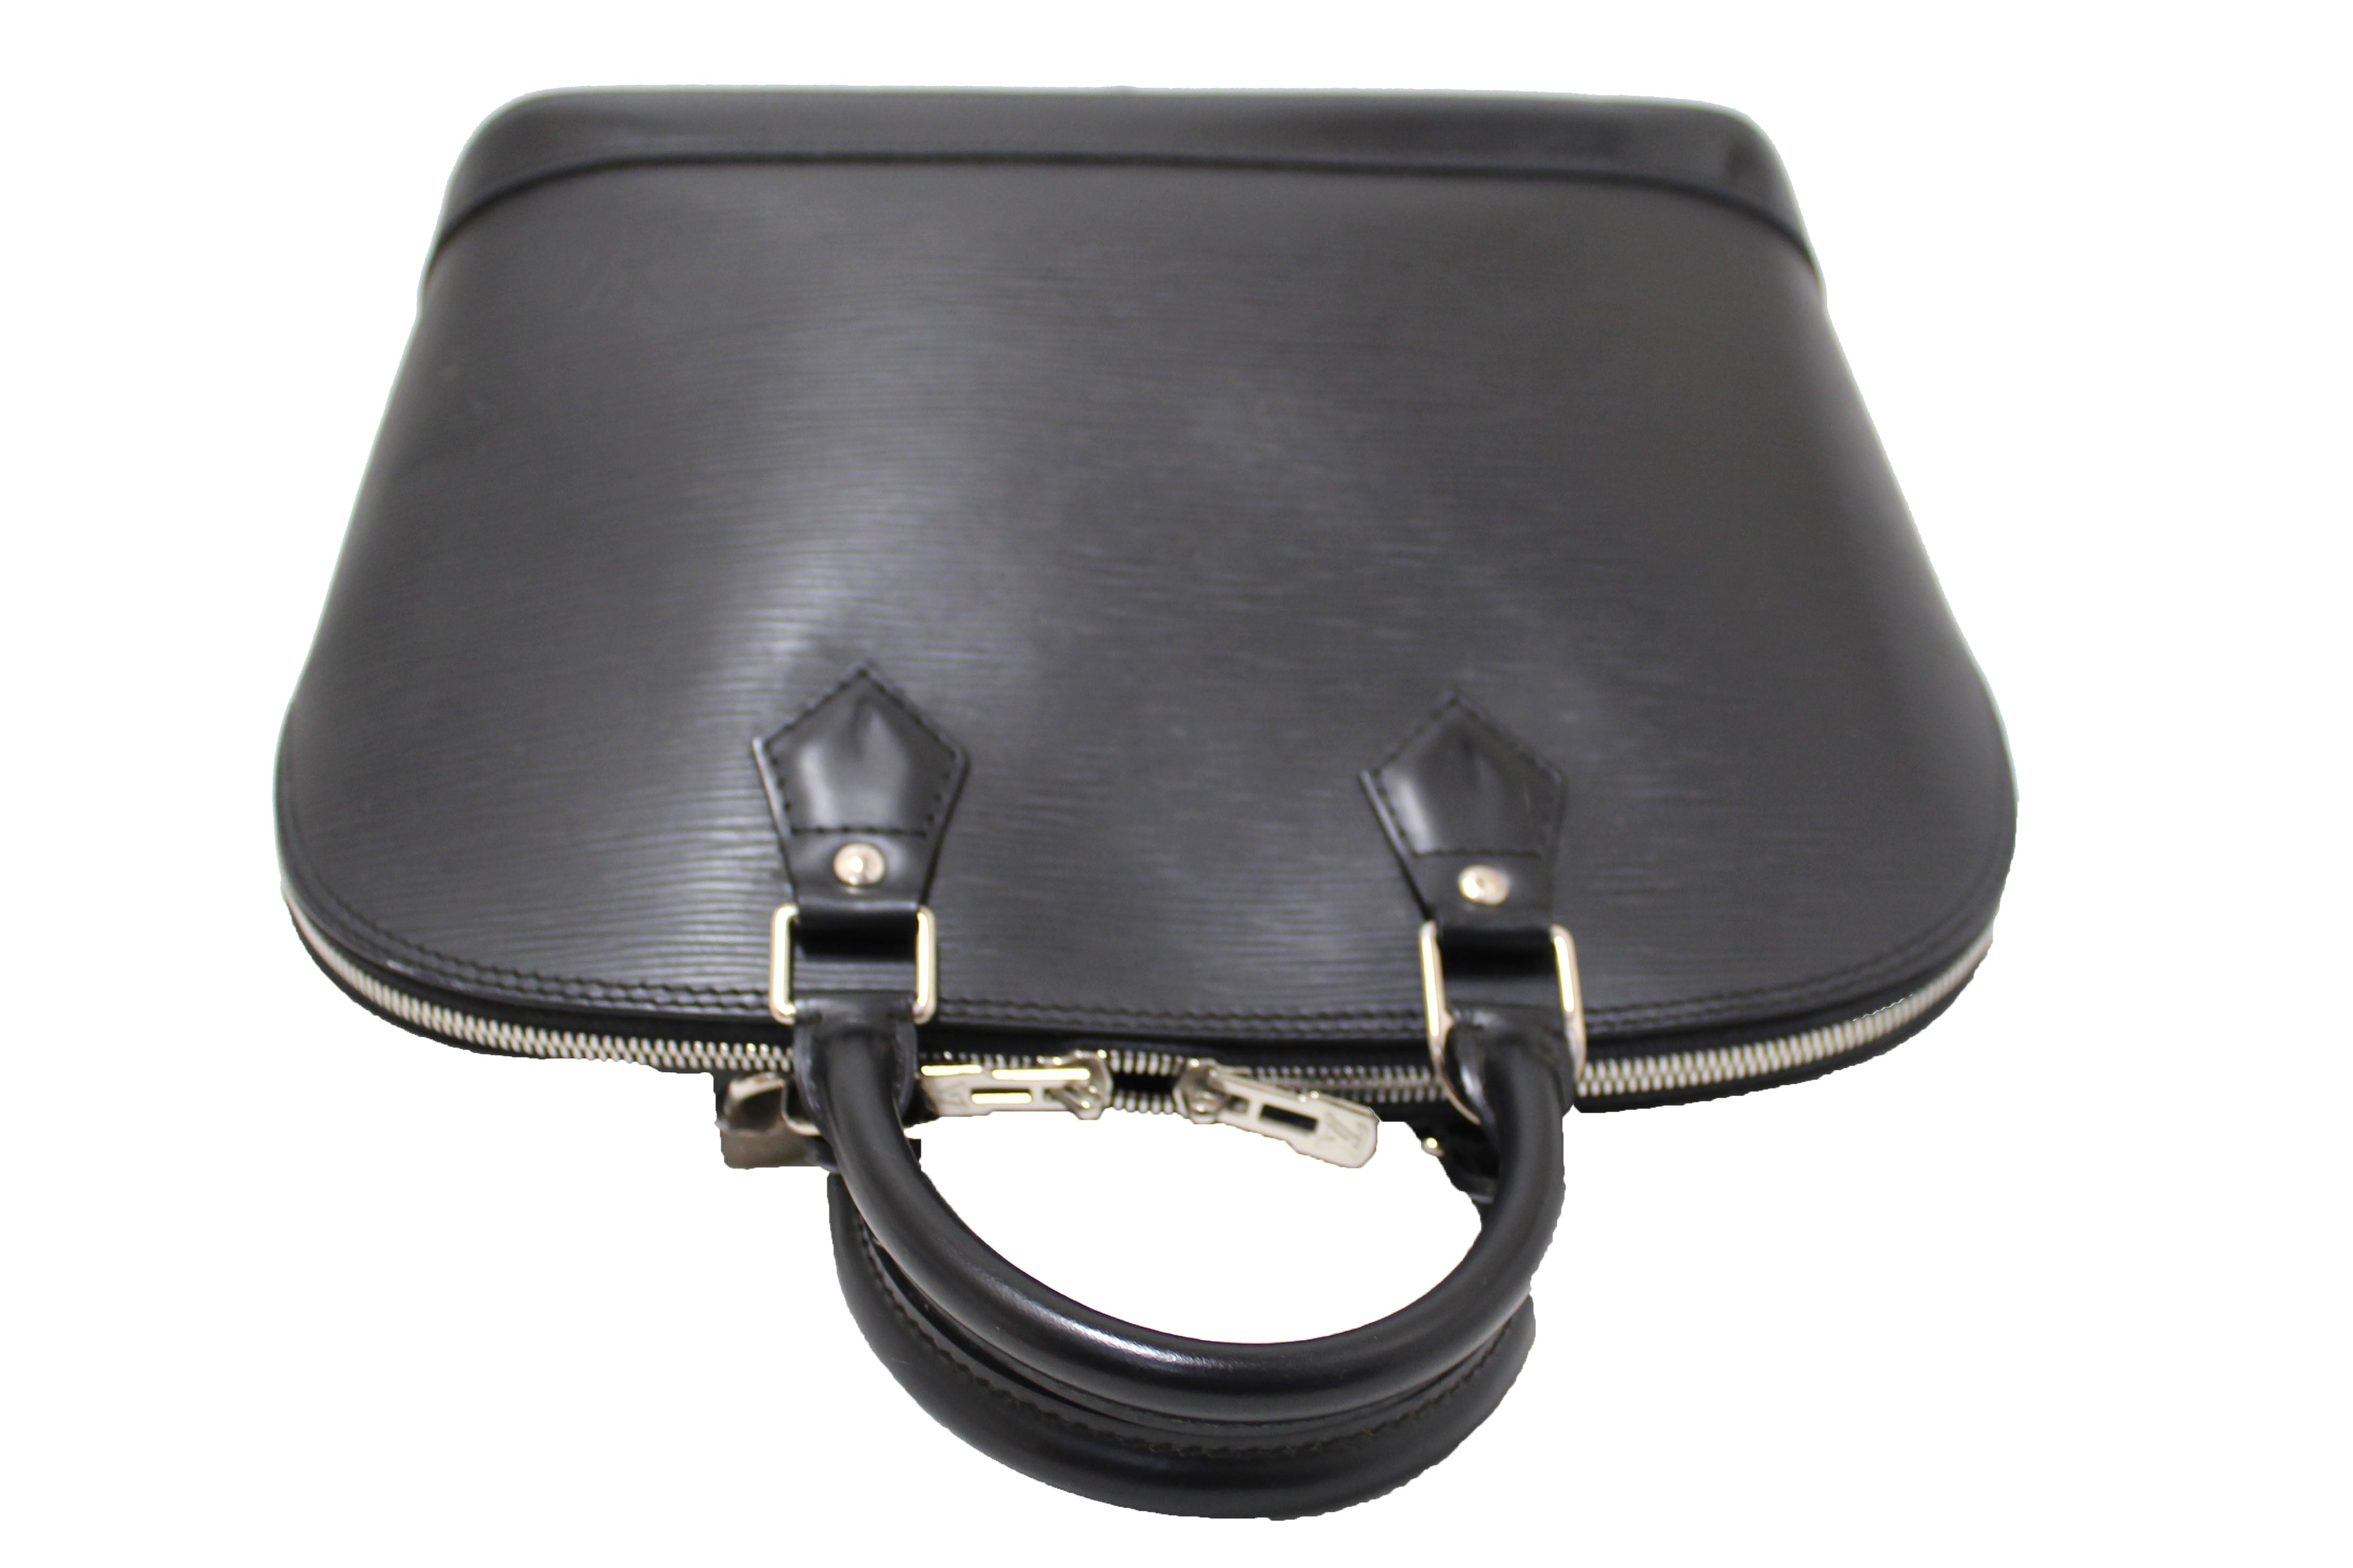 Authentic Louis Vuitton Black Epi Leather Alma PM Hand Bag